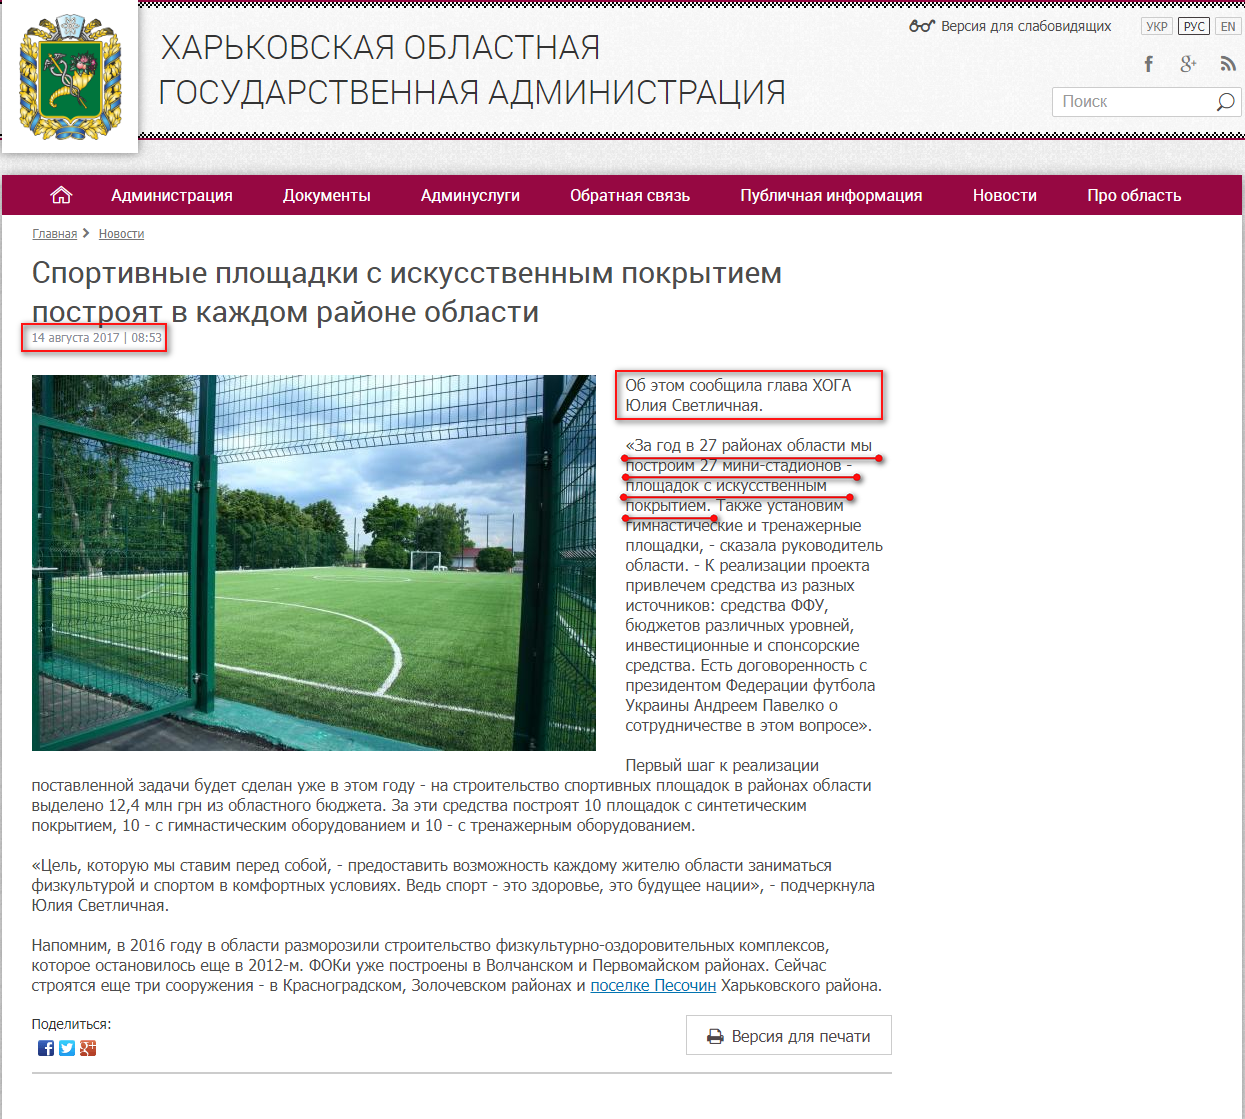 http://kharkivoda.gov.ua/ru/news/88019